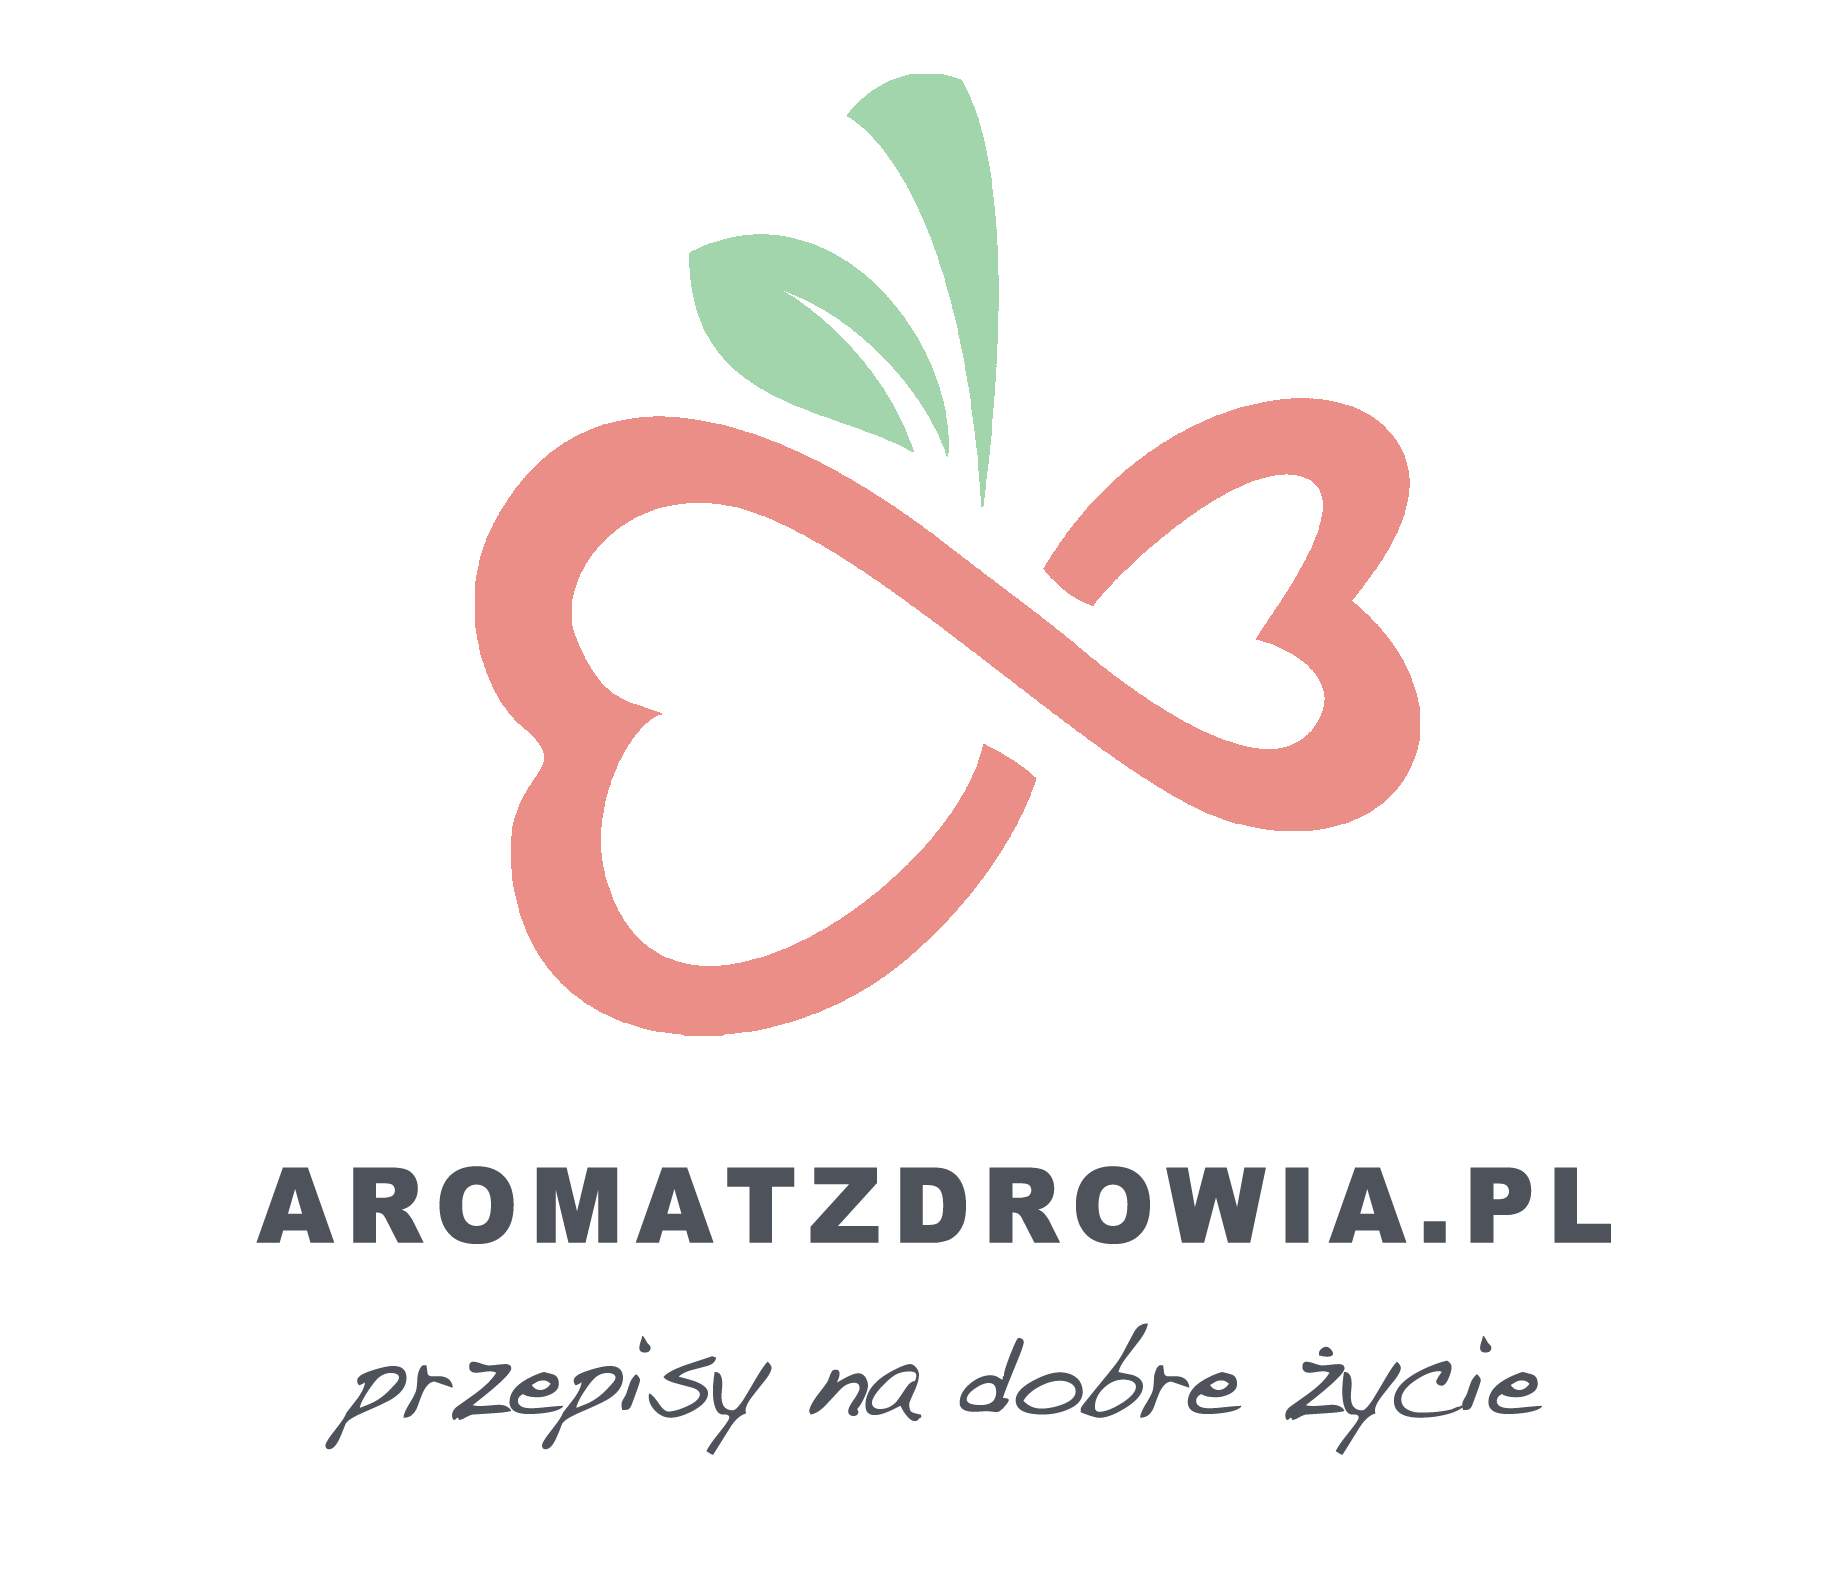 AromatZdrowia.pl